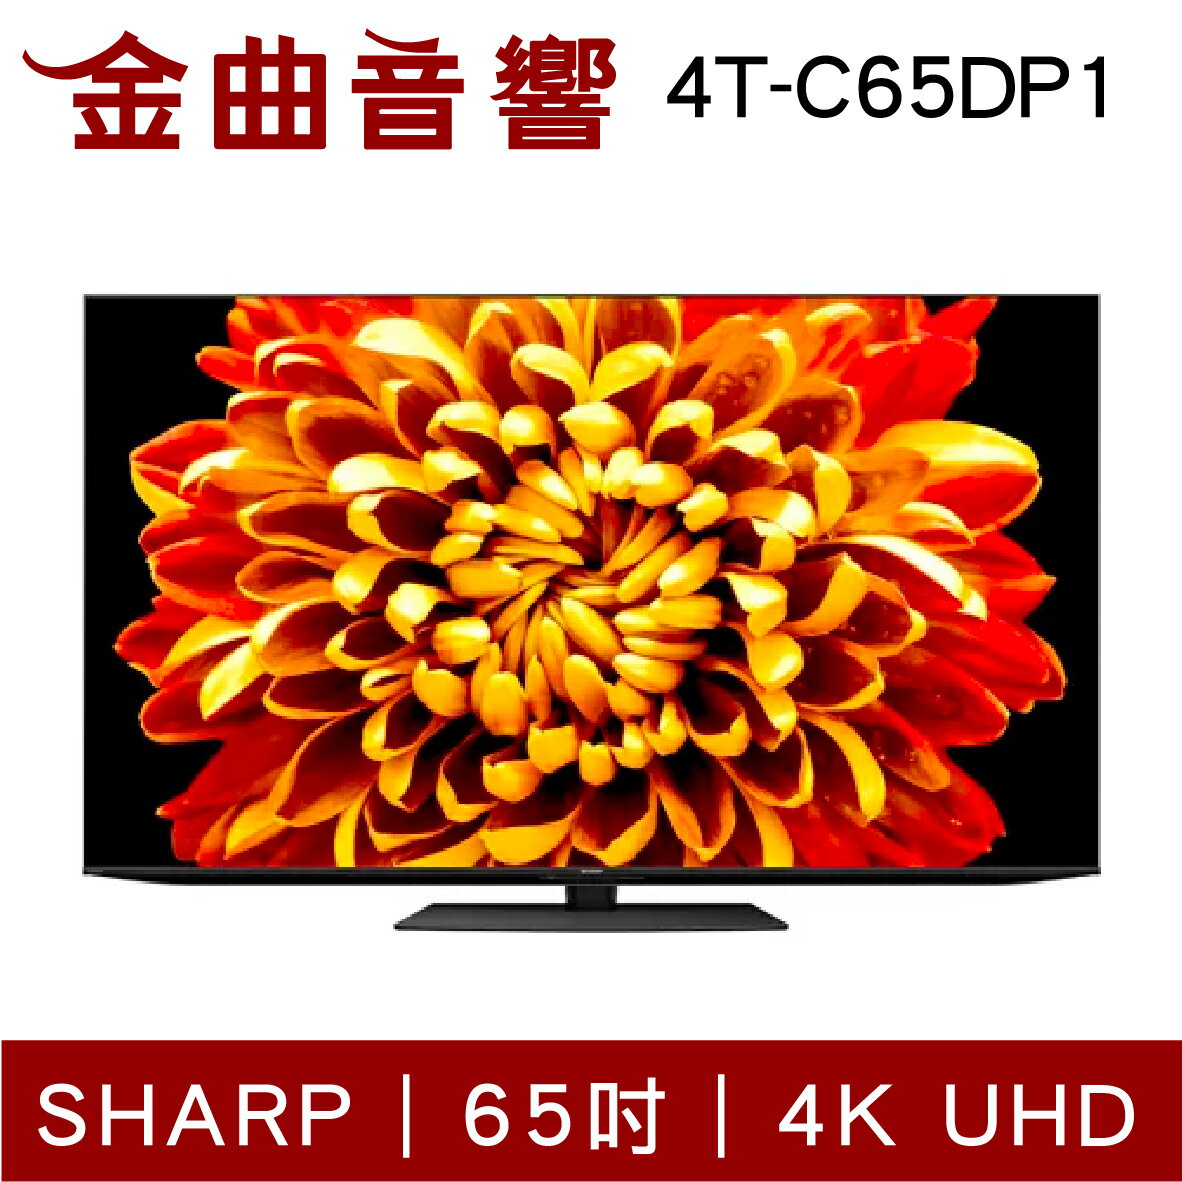 SHARP 夏普 4T-C65DP1 65吋 4K UHD Android TV 液晶電視 2022 | 金曲音響